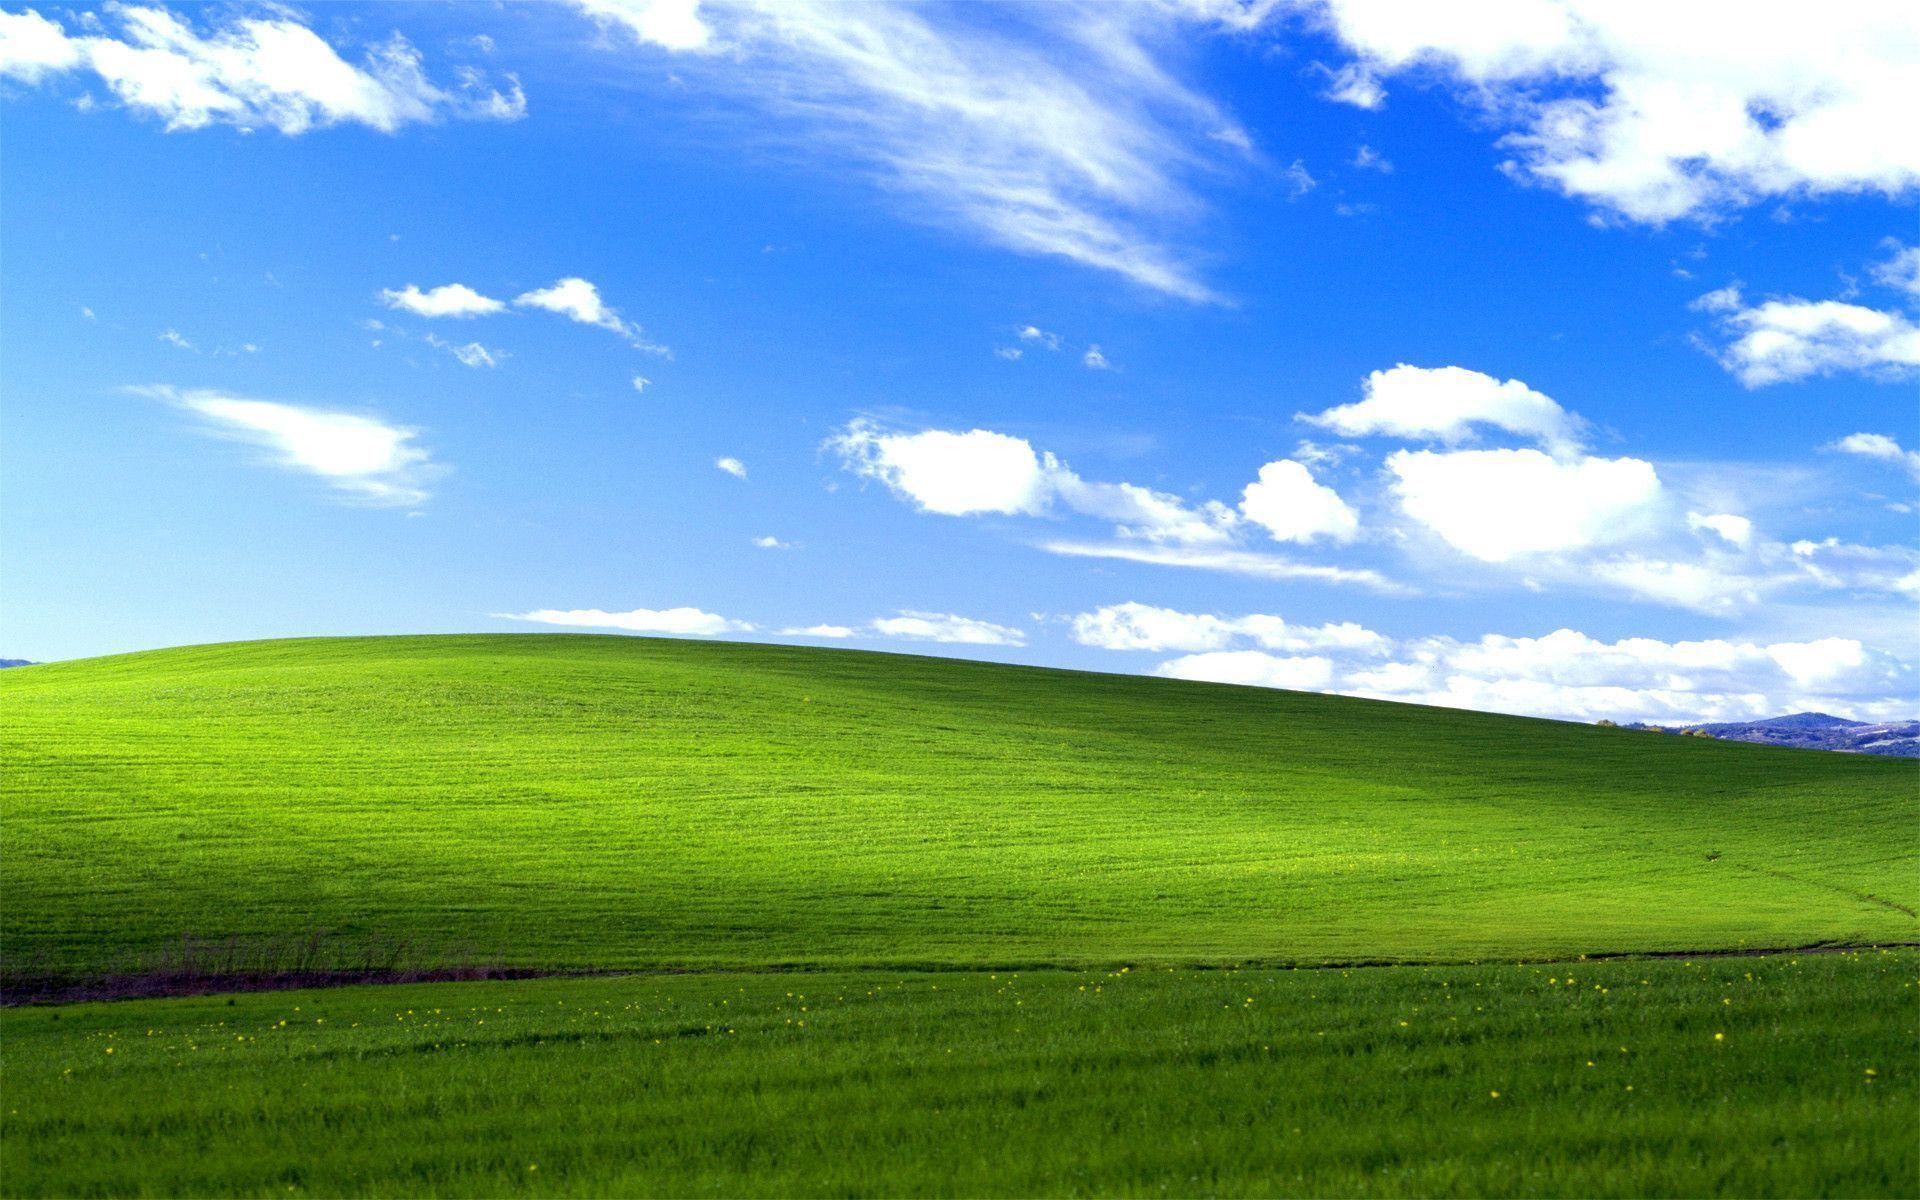 Tải hình nền Windows XP - Bạn đang tìm kiếm những bộ hình nền Windows XP độc đáo và ấn tượng nhất để tải về máy tính của mình? Hãy truy cập ngay vào danh sách các hình nền Windows XP đặc sắc và lựa chọn cho mình những bức ảnh yêu thích nhất để tăng thêm sự tinh tế và đẳng cấp cho máy tính của bạn.